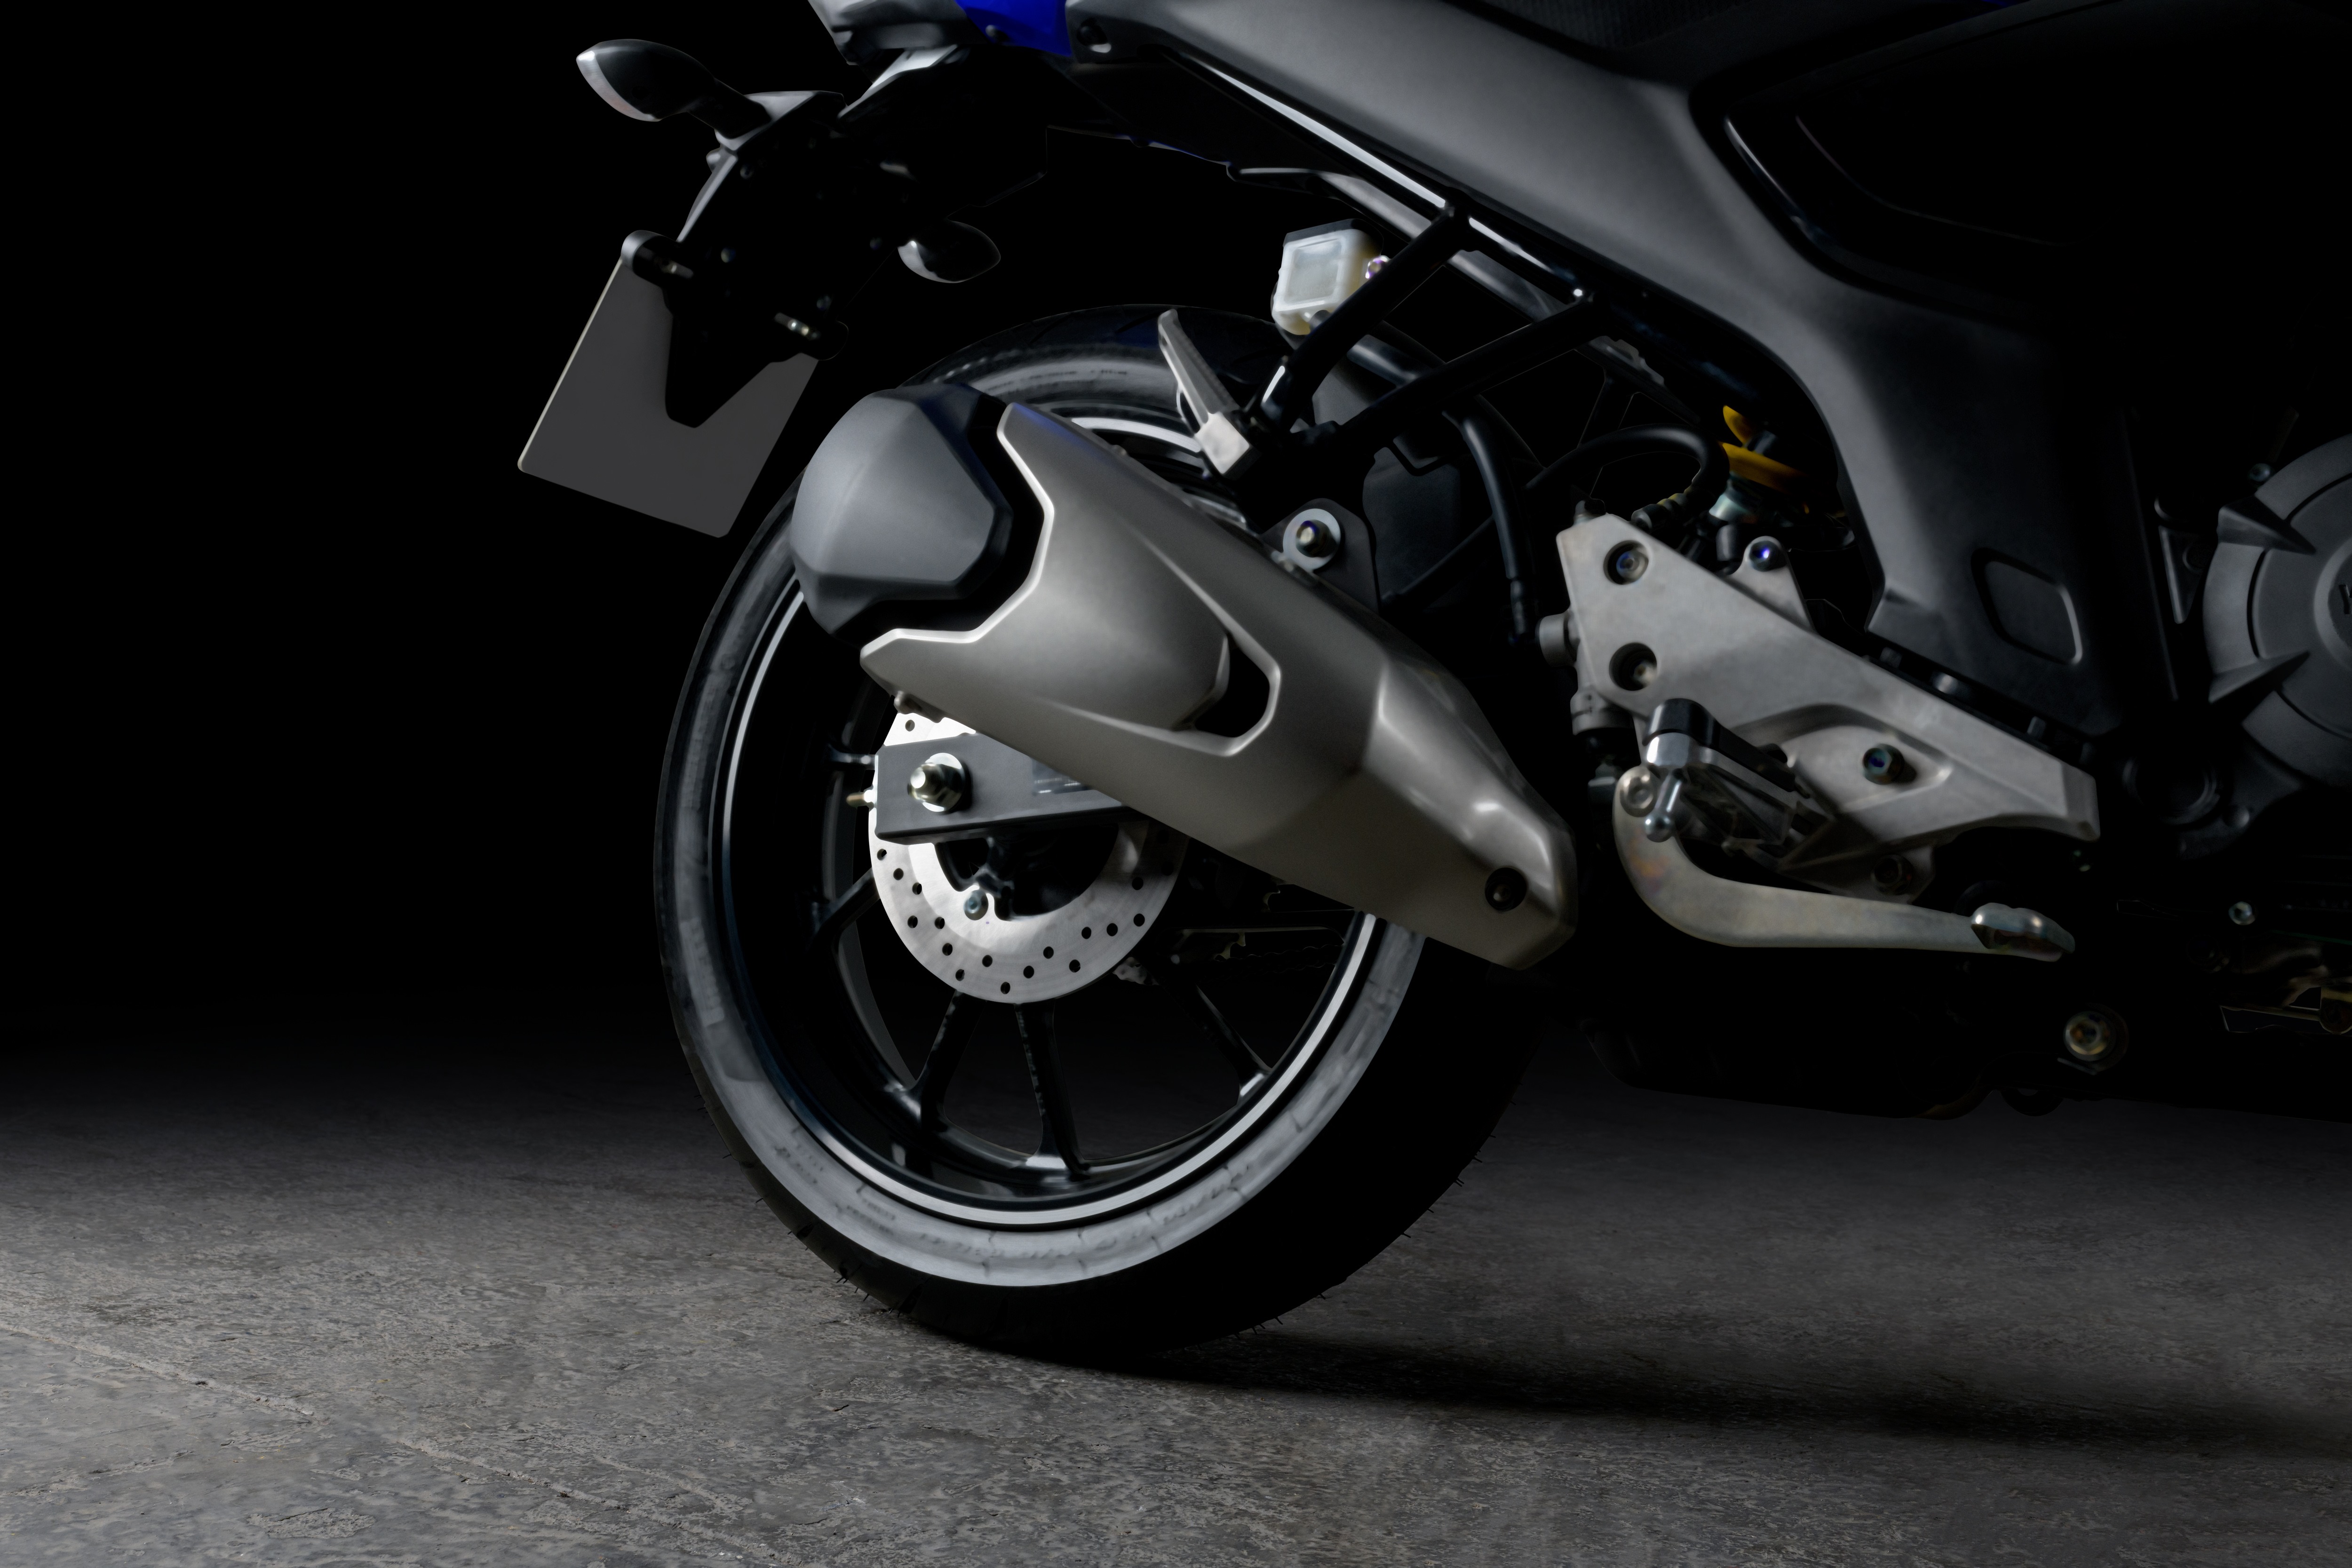 Yamaha Fazer FZ15 azul, detalhe da roda traseira e escapamento.